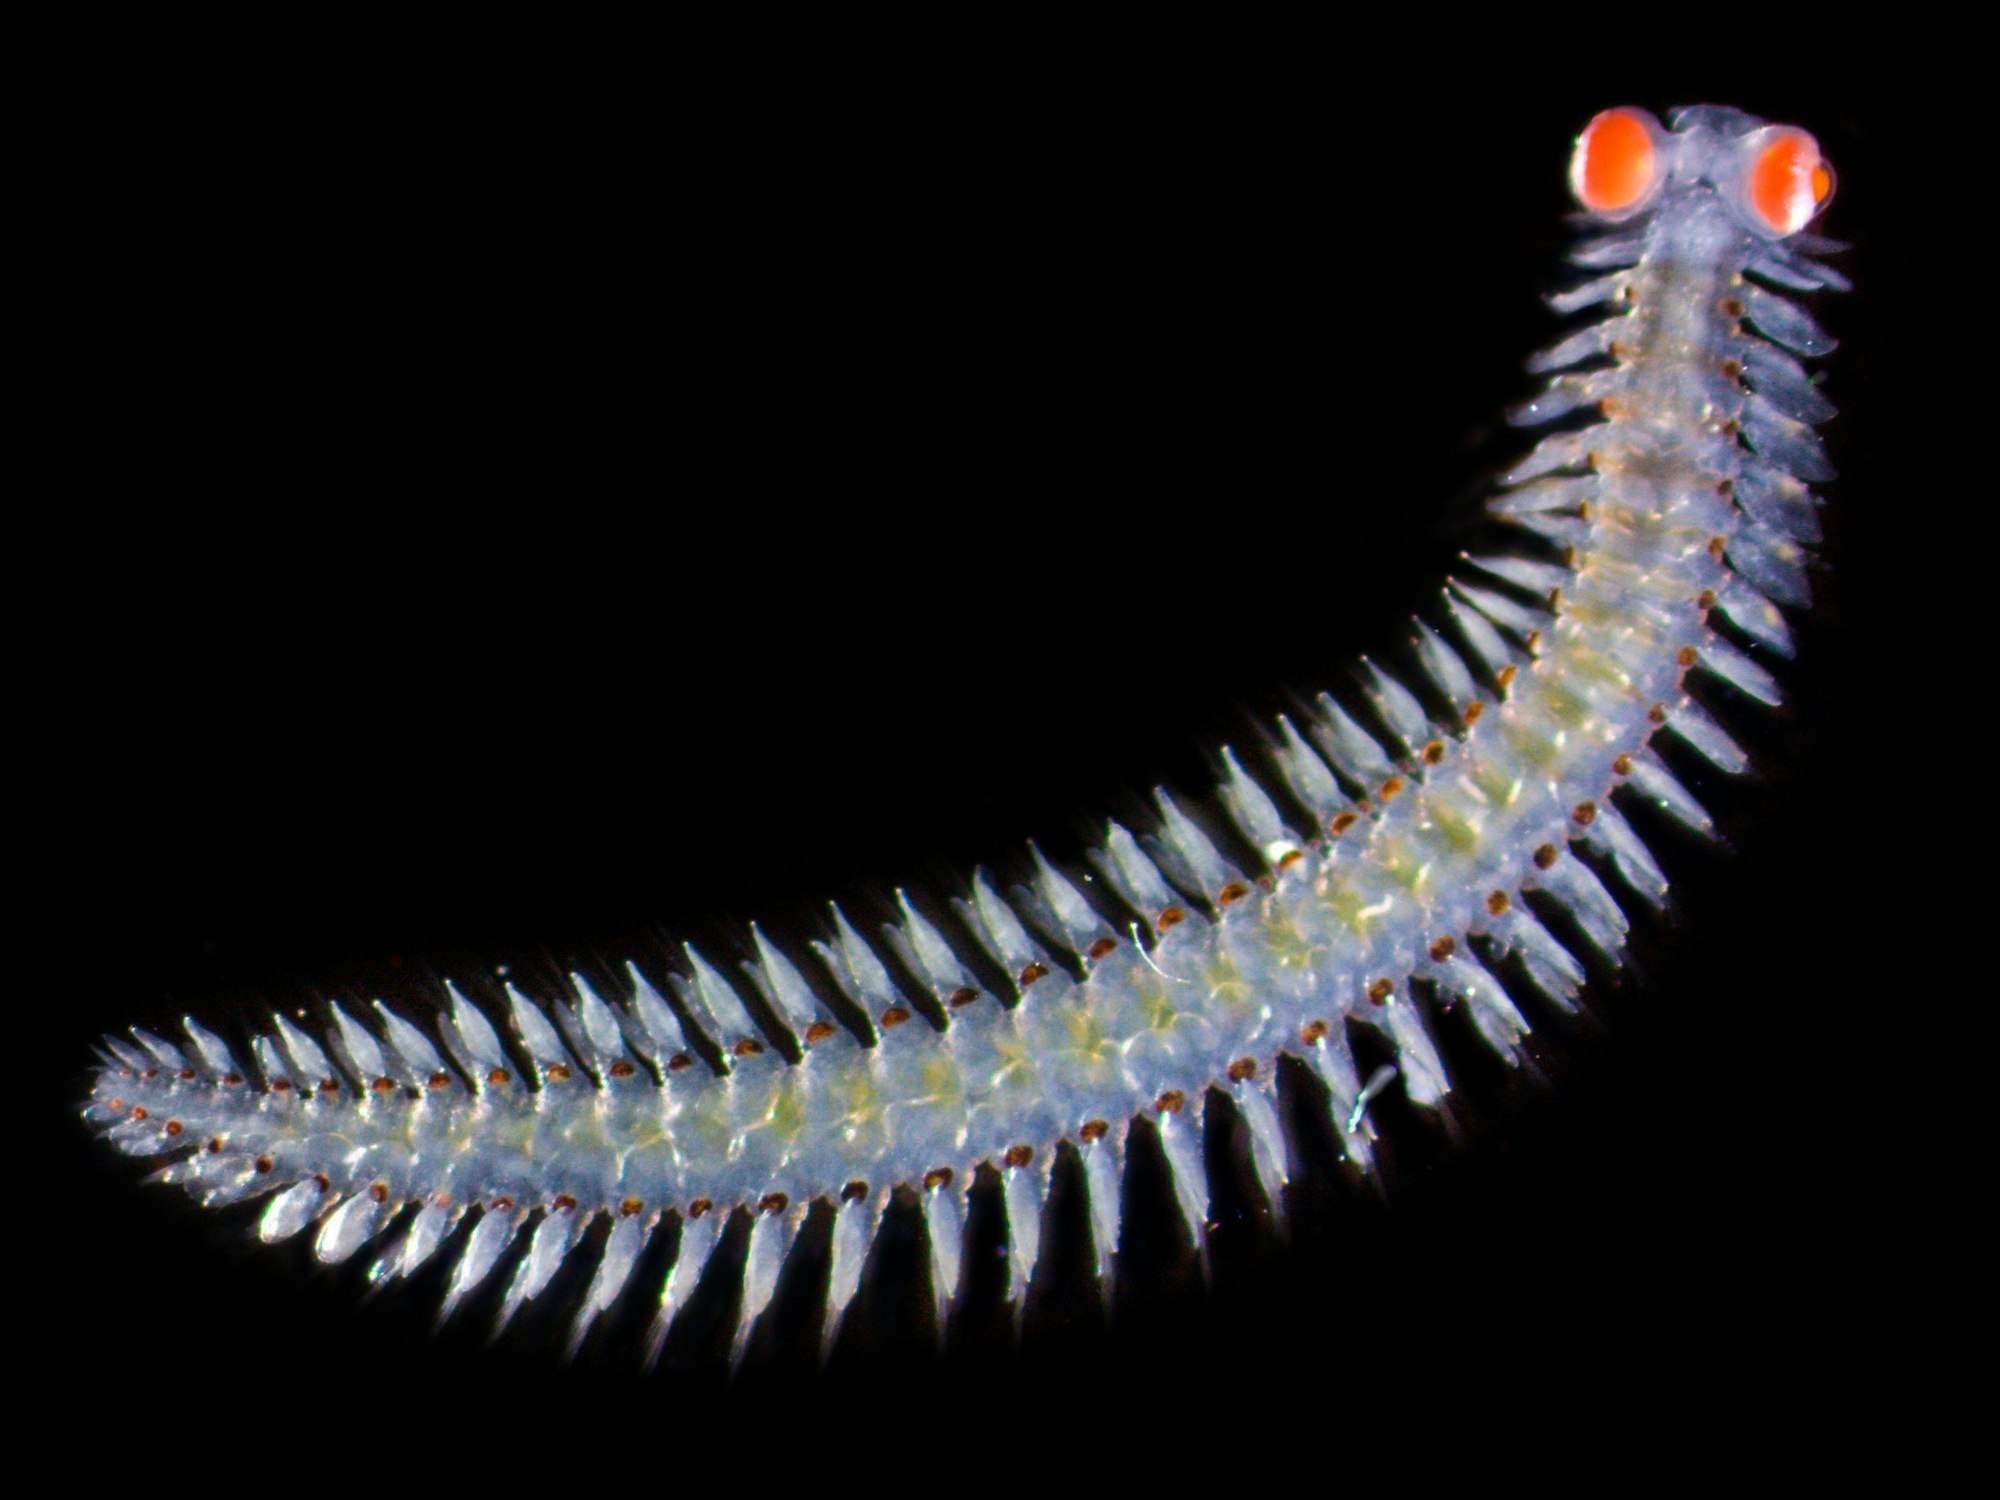 Diese Meereswürmer haben im Vergleich zu ihrer Körpergröße extrem große Augen. Ob die Würmer damit eher nach Beute oder nach möglichen Partnern Ausschau halten, ist aber bisher noch unklar.